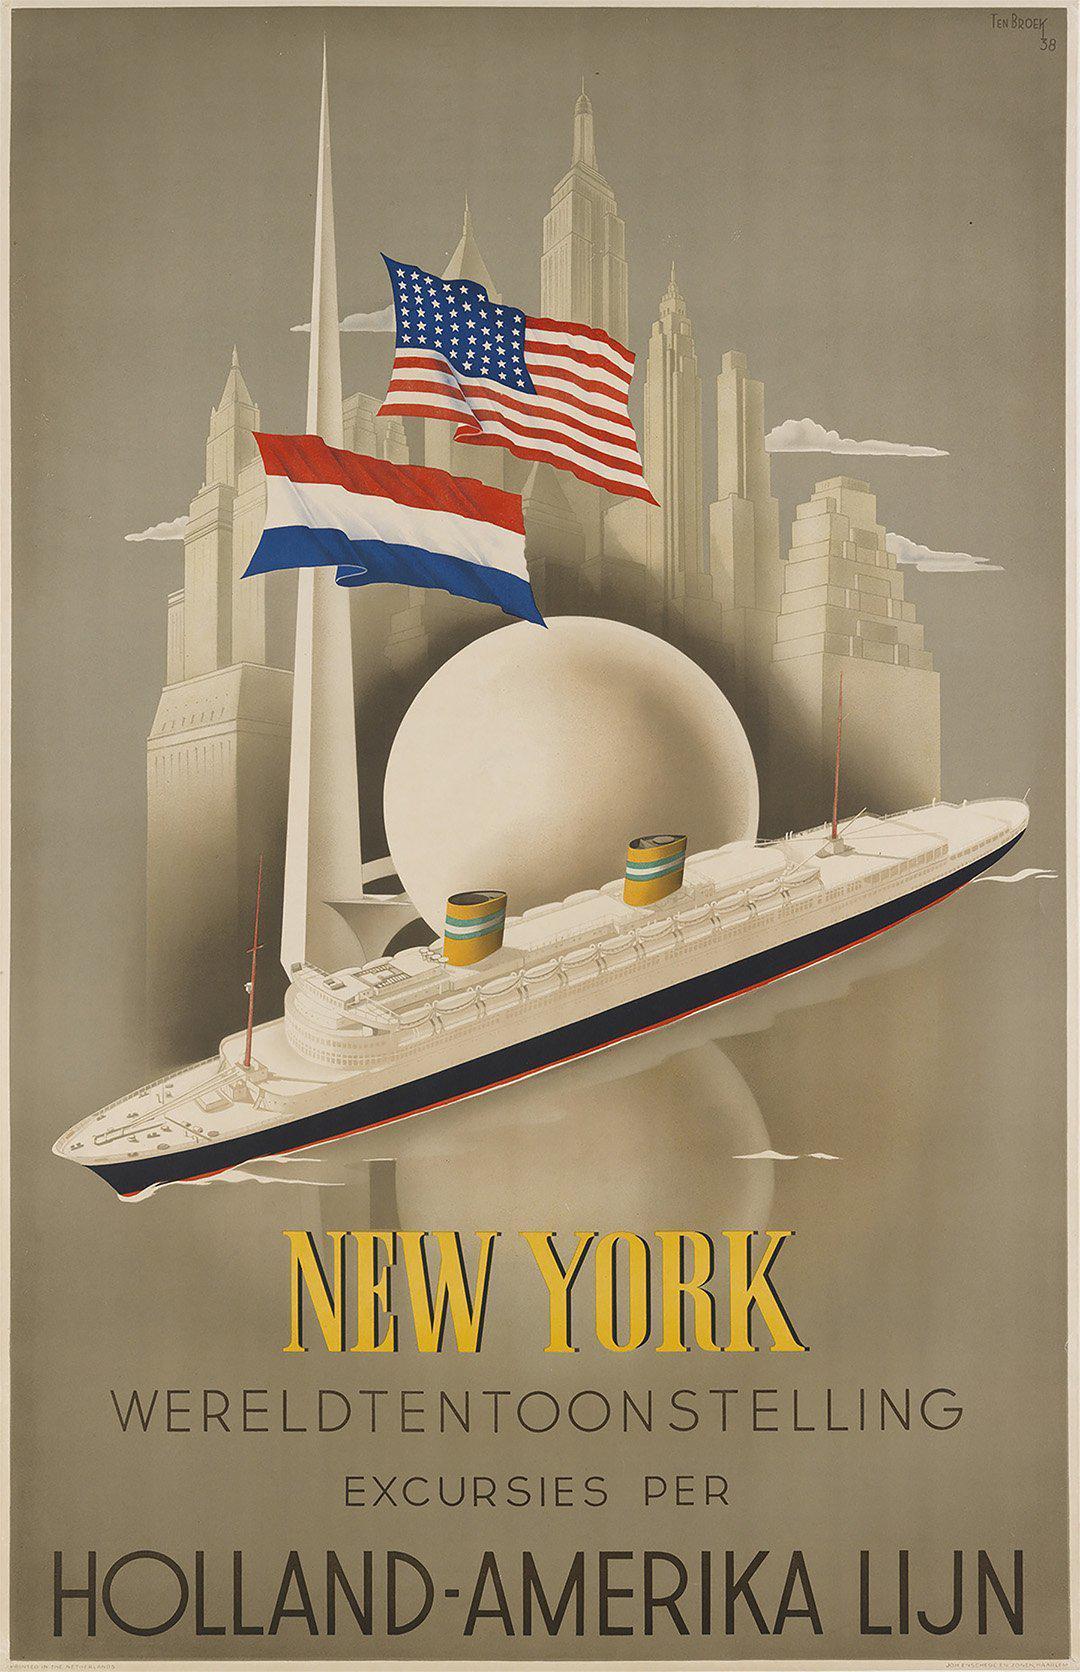 Original New York Holland-Amerika Lijn 1939 Poster by Willem Ten Broek